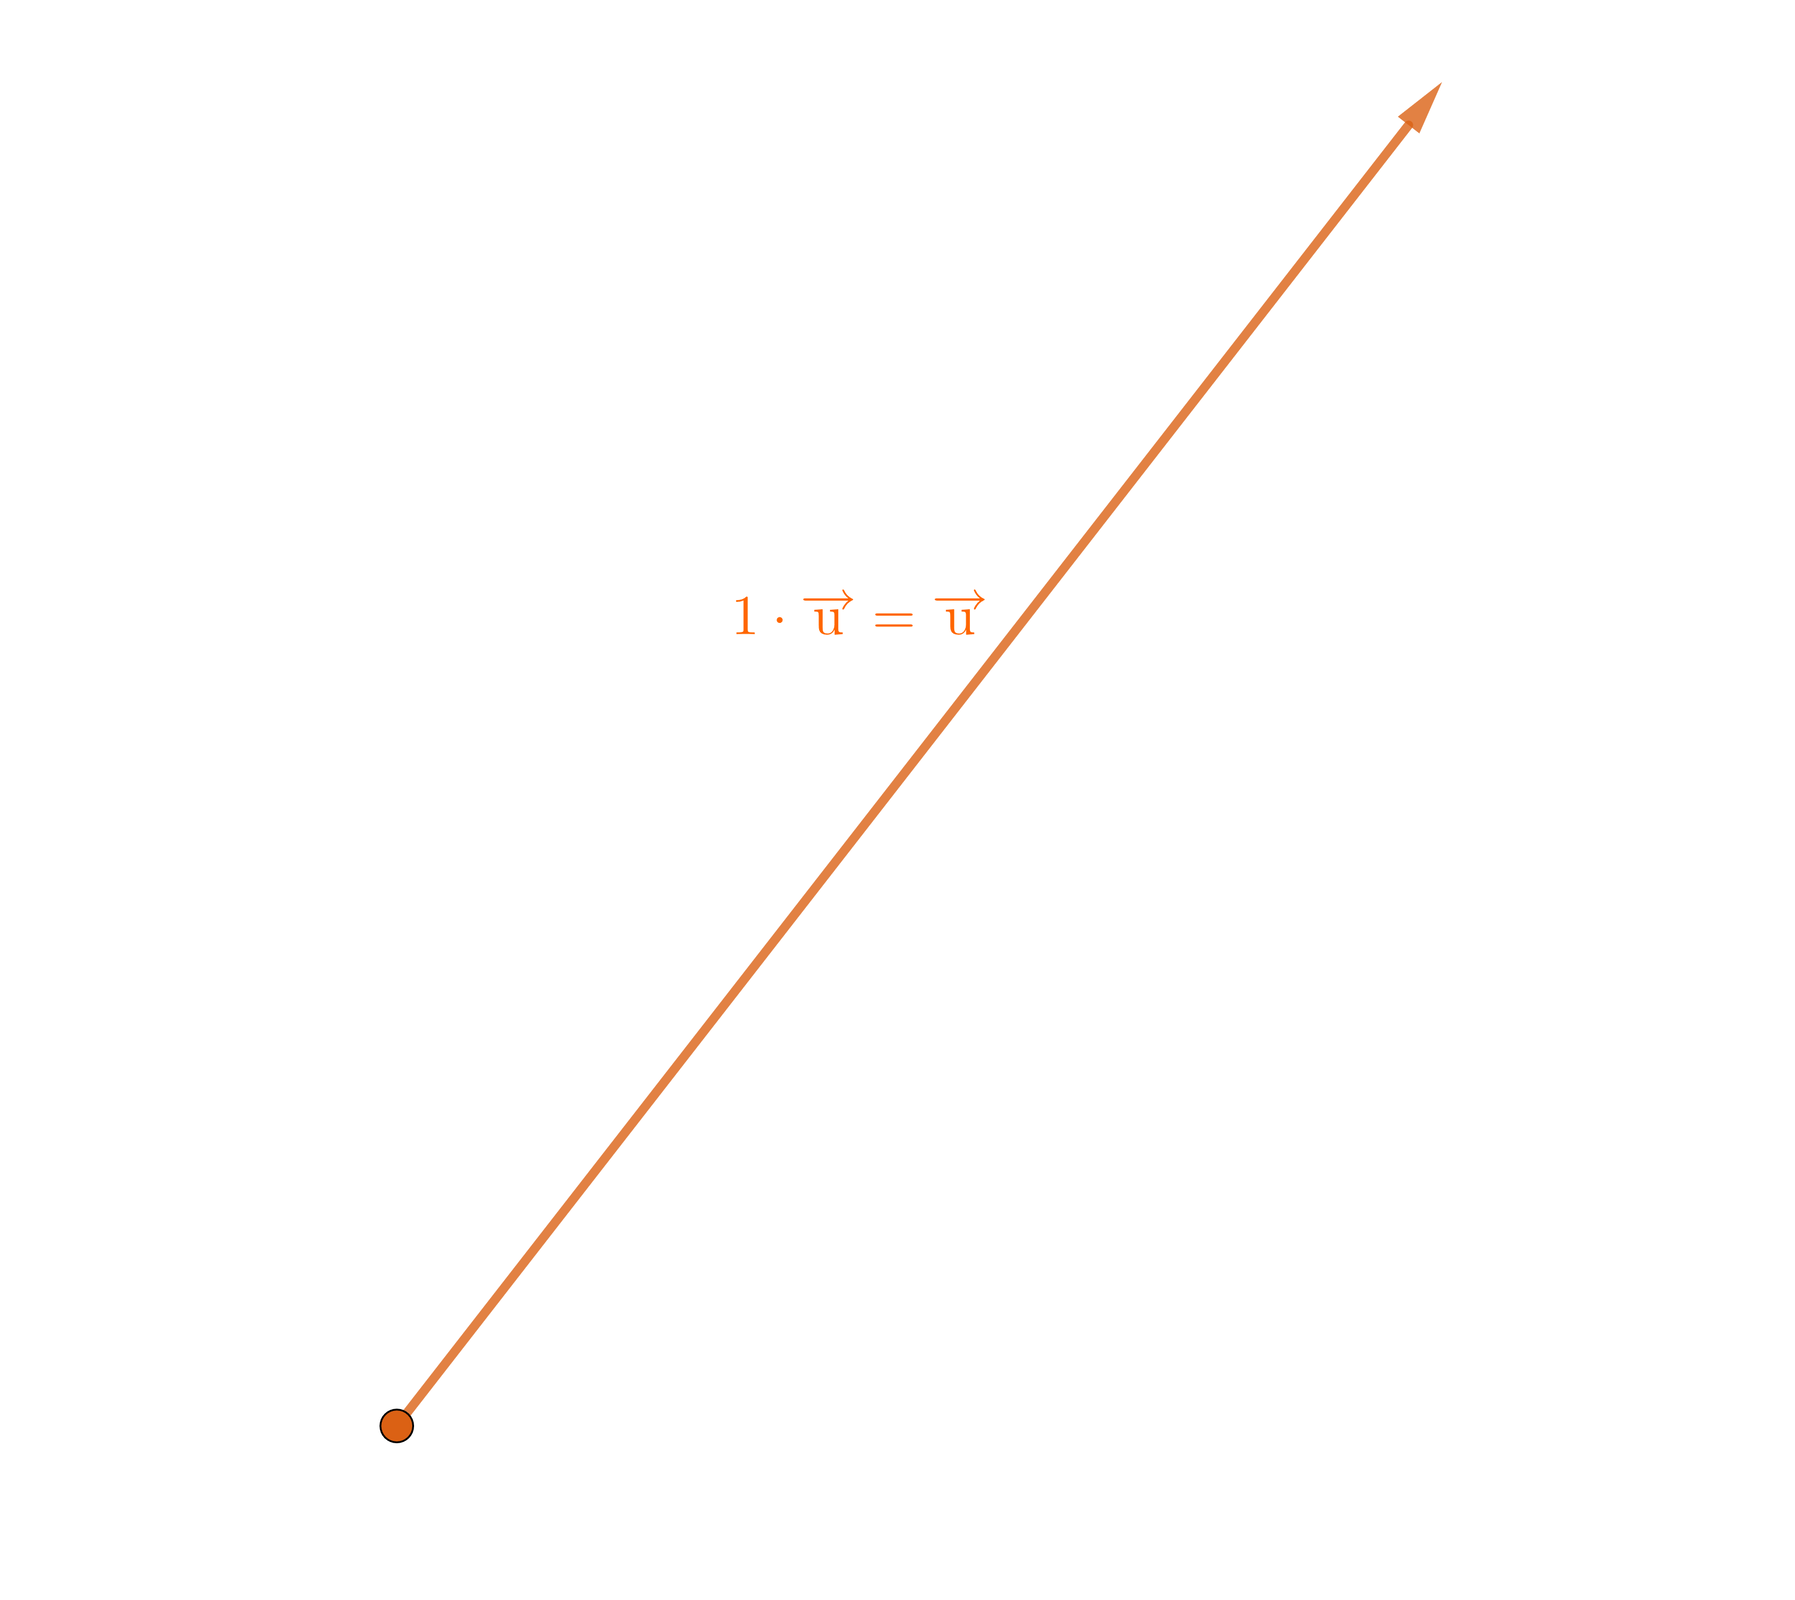 Na ilustracji znajduje się wektor pokazujący na górę w skos. Po prawej stronie wektora znajduje się następujące równanie: jeden razy wektor U równa się wektor U.